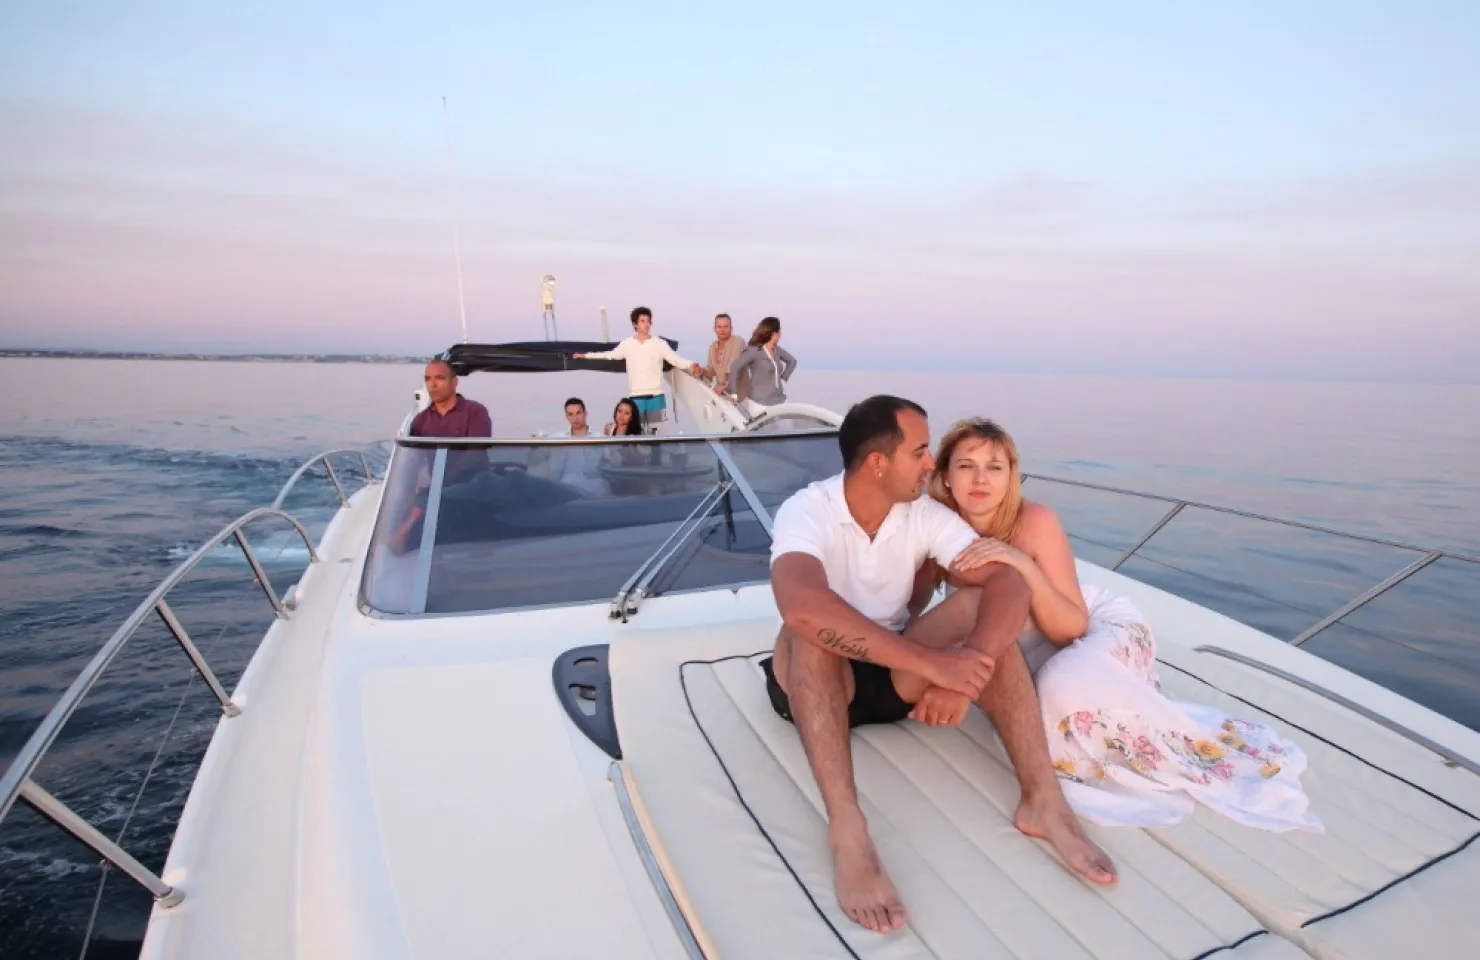 Luxury Sunset Cruise - Algarve Boat Trips and Tours - Vilamoura 